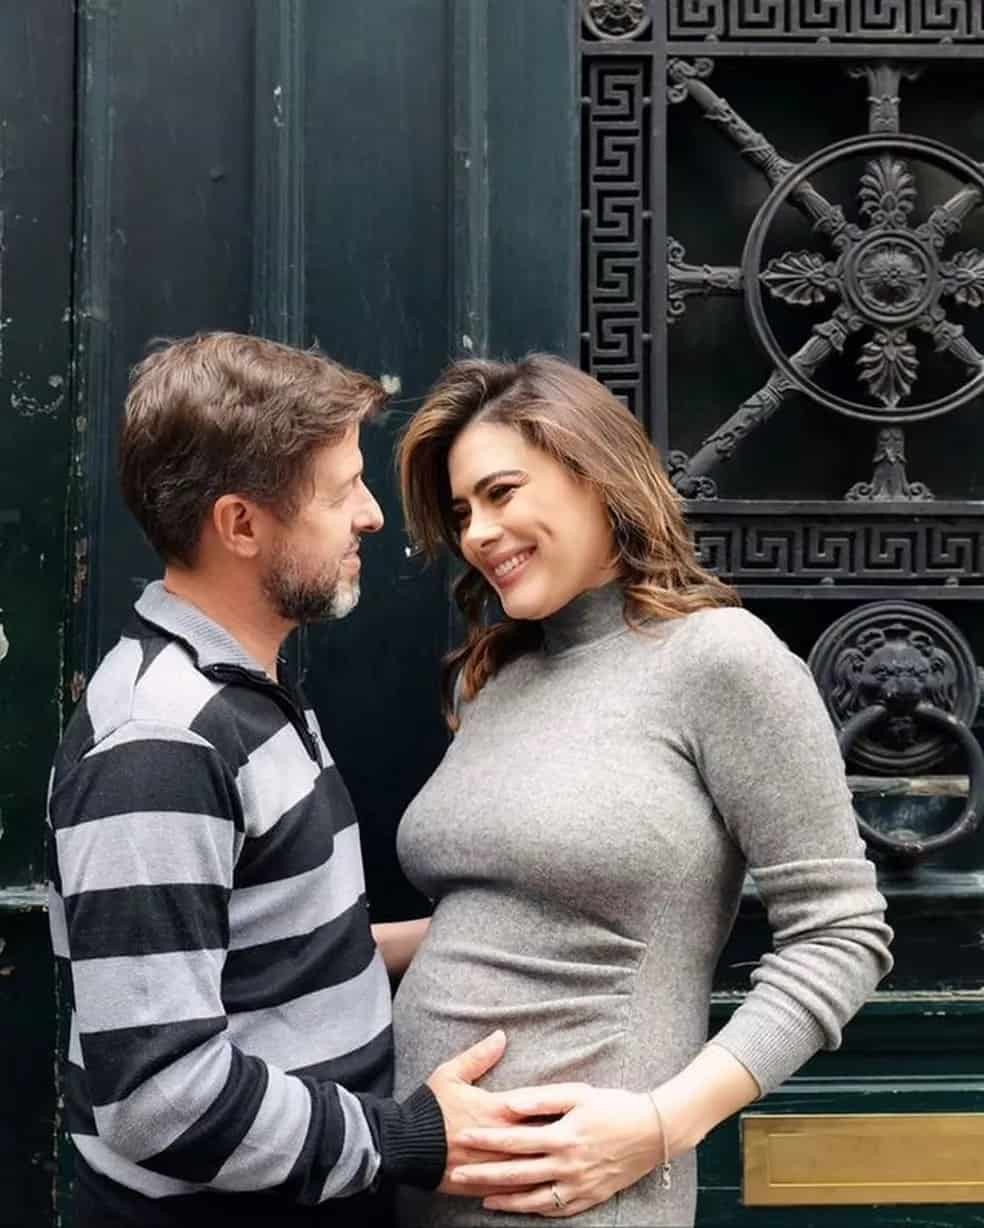 Michelle Loreto anuncia 1ª gravidez aos 43 anos e relacionamento com diretor do Encontro